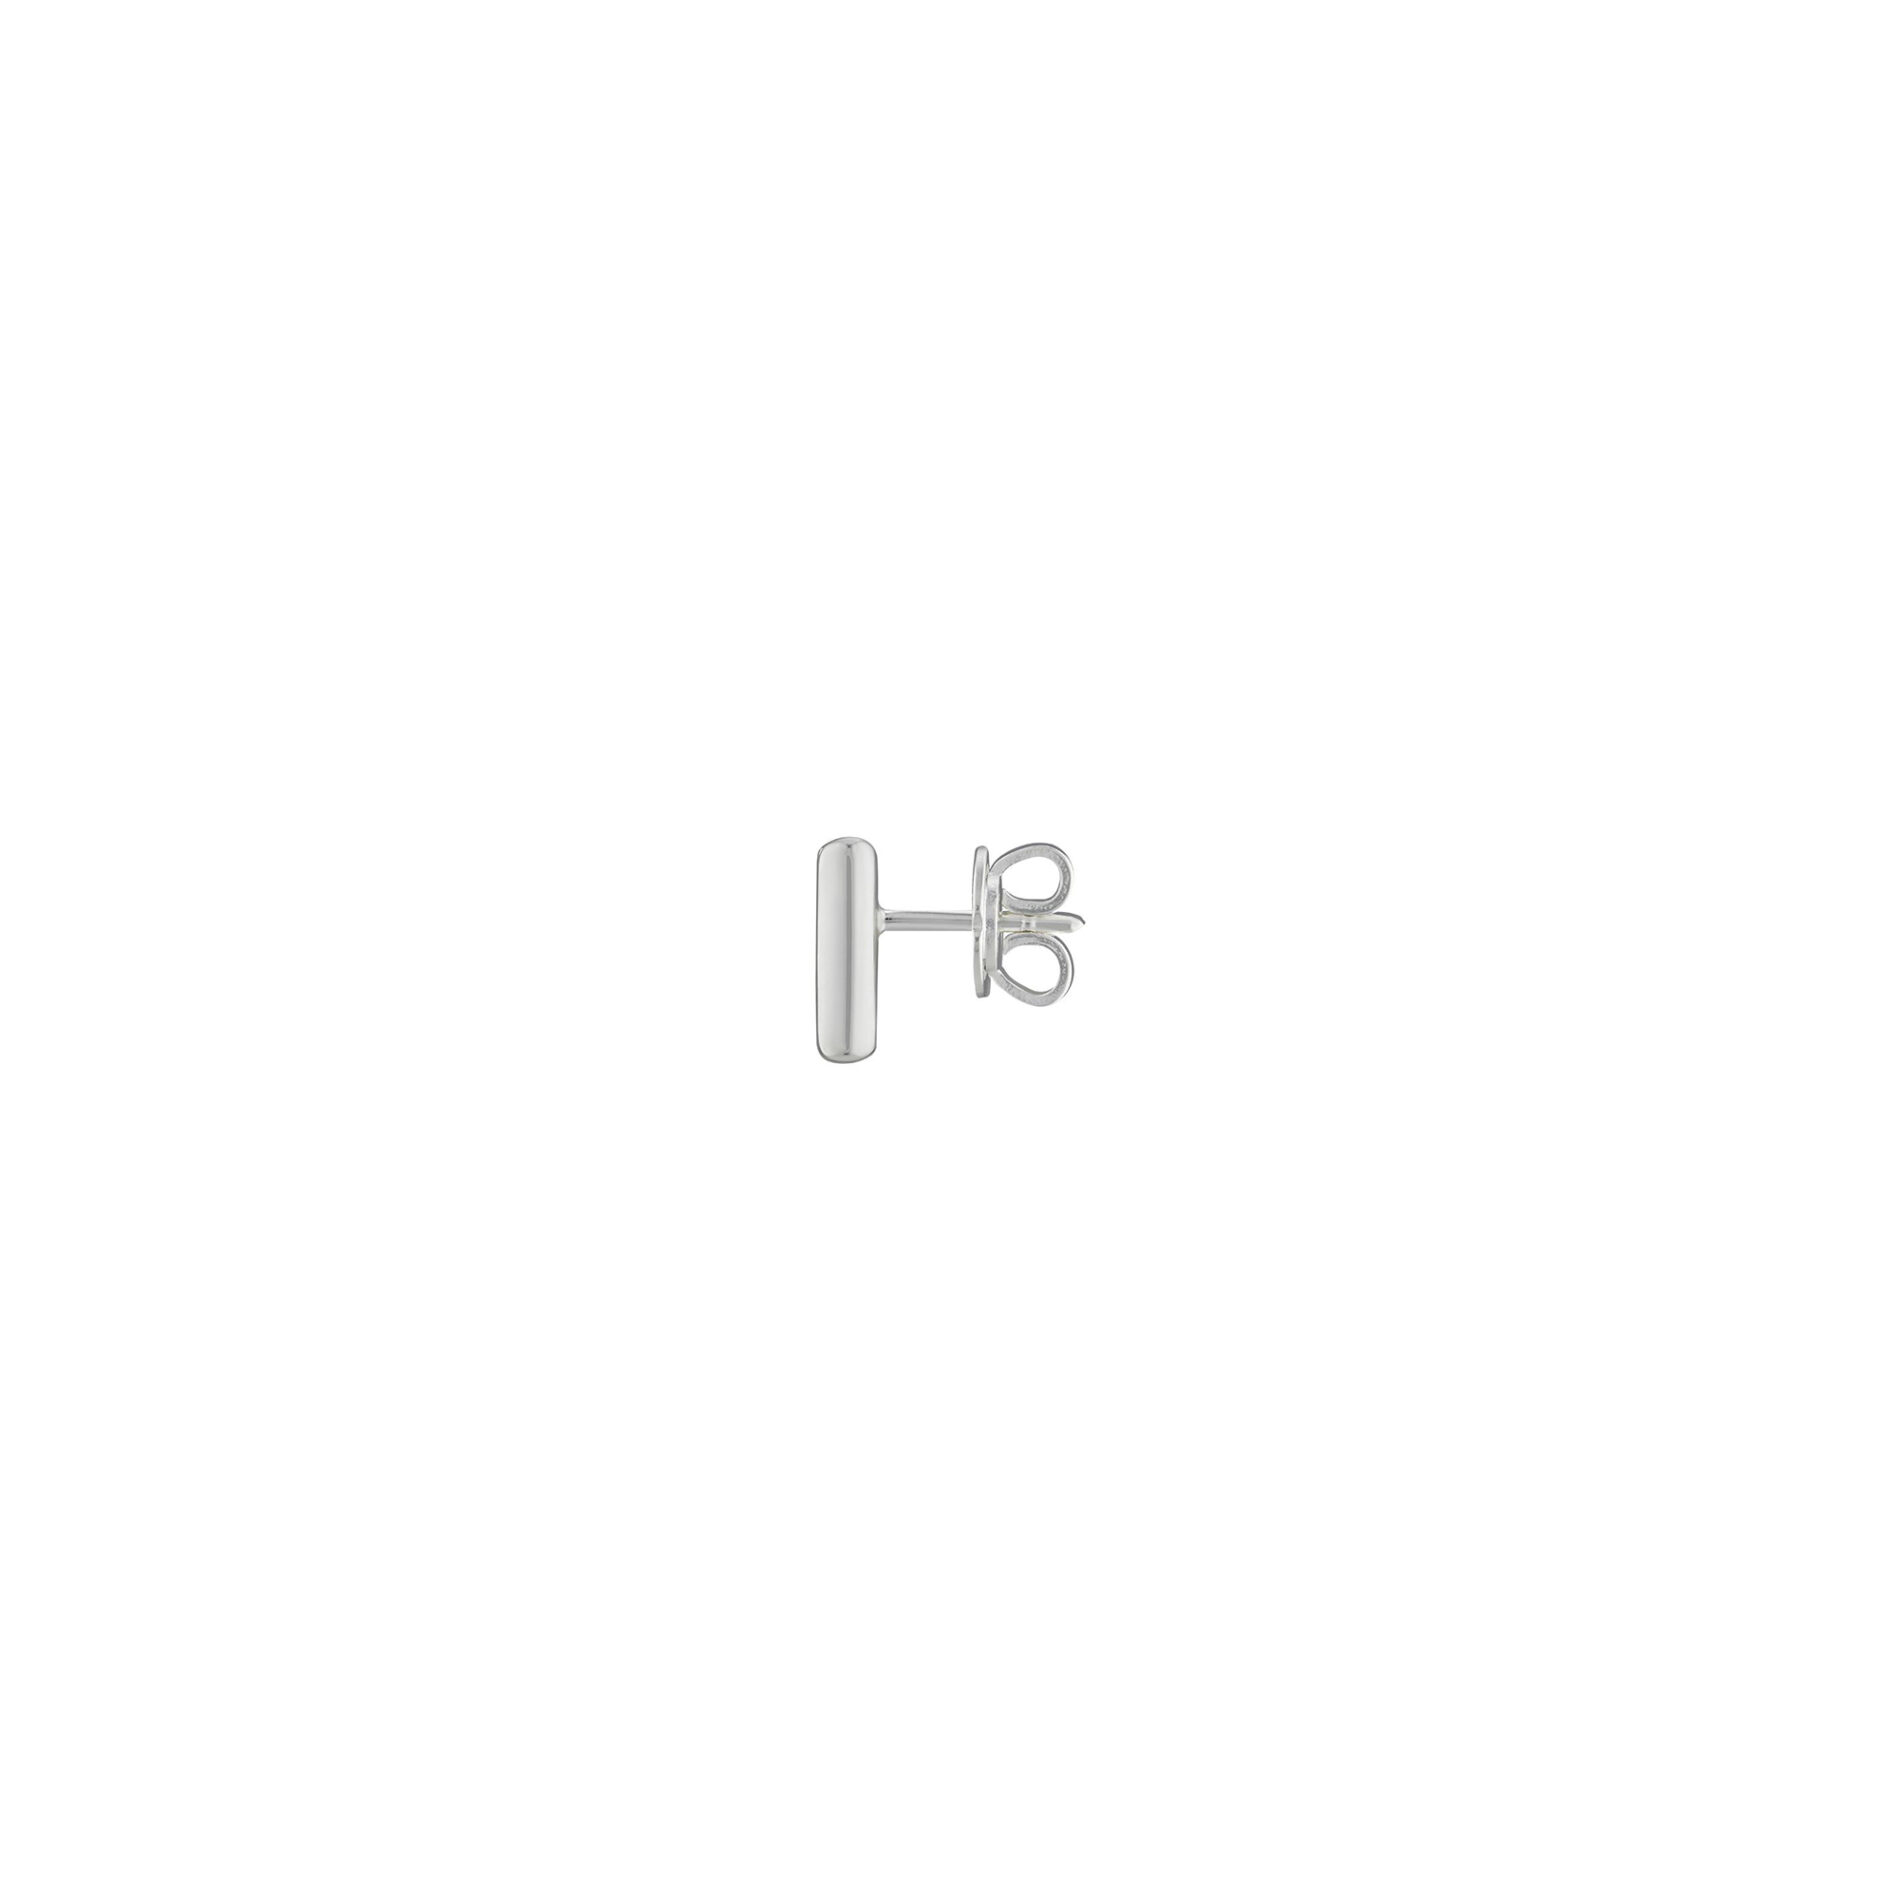 Gucci Tag YBD774033001 - Gioielleria Casavola di Noci - orecchini quadrati in argento 925 con incrocio GG inciso - immagine laterale